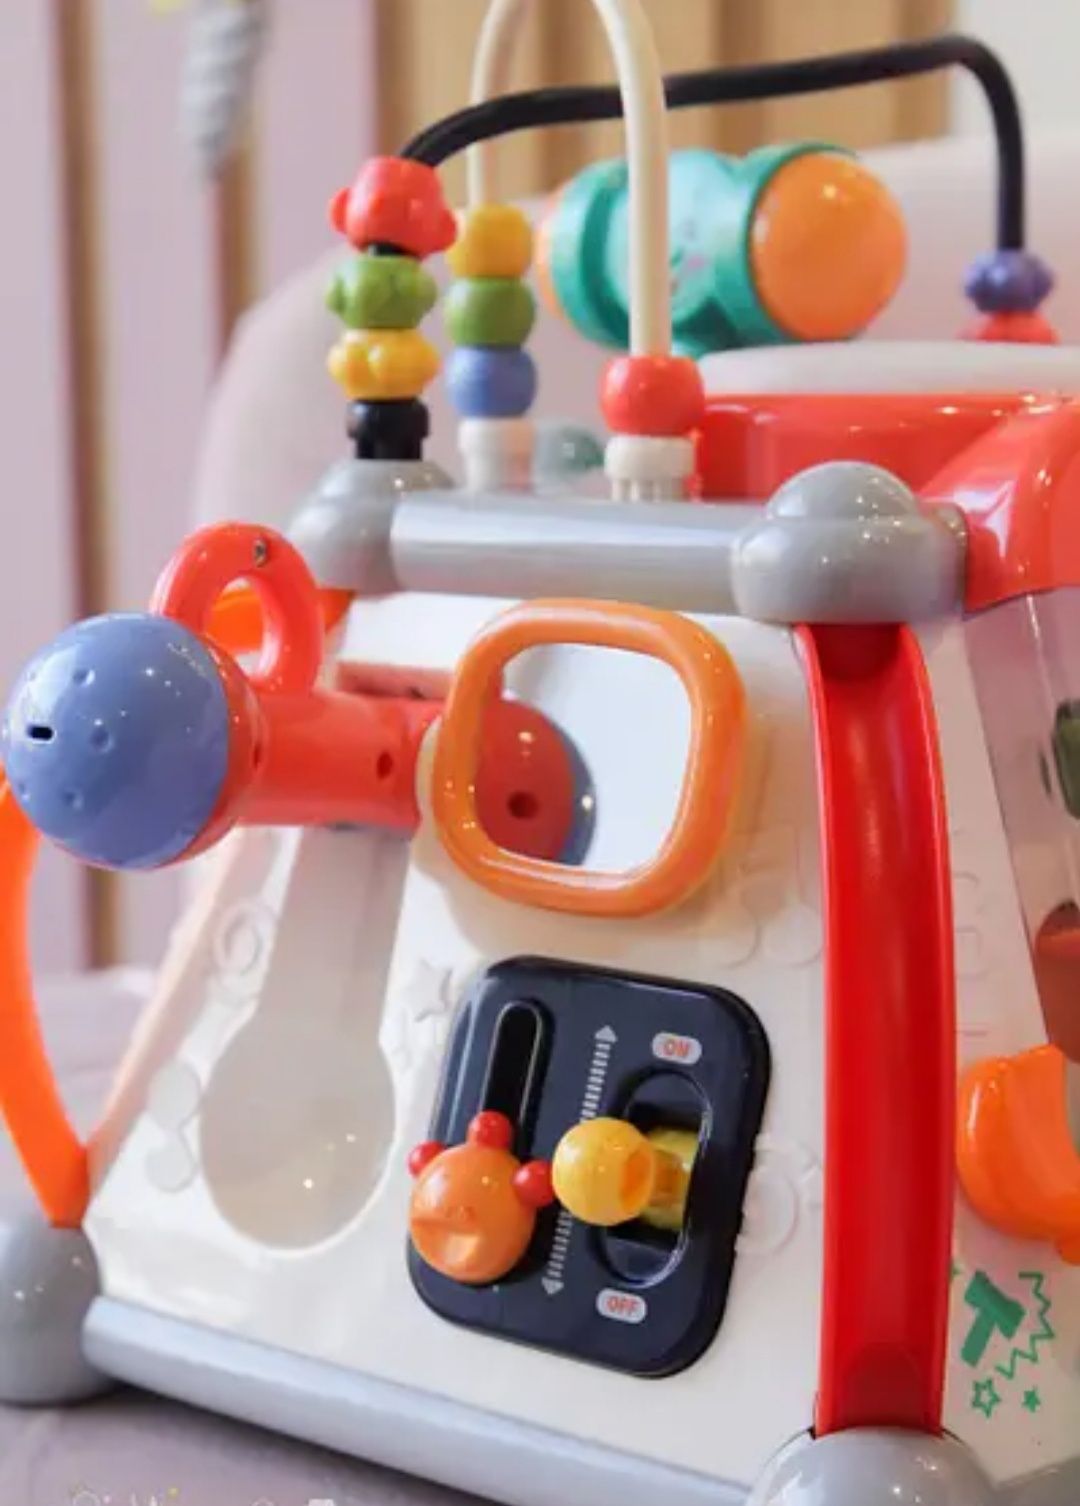 Мультибокс отличная игрушка для детей от 1 до 3 лет.